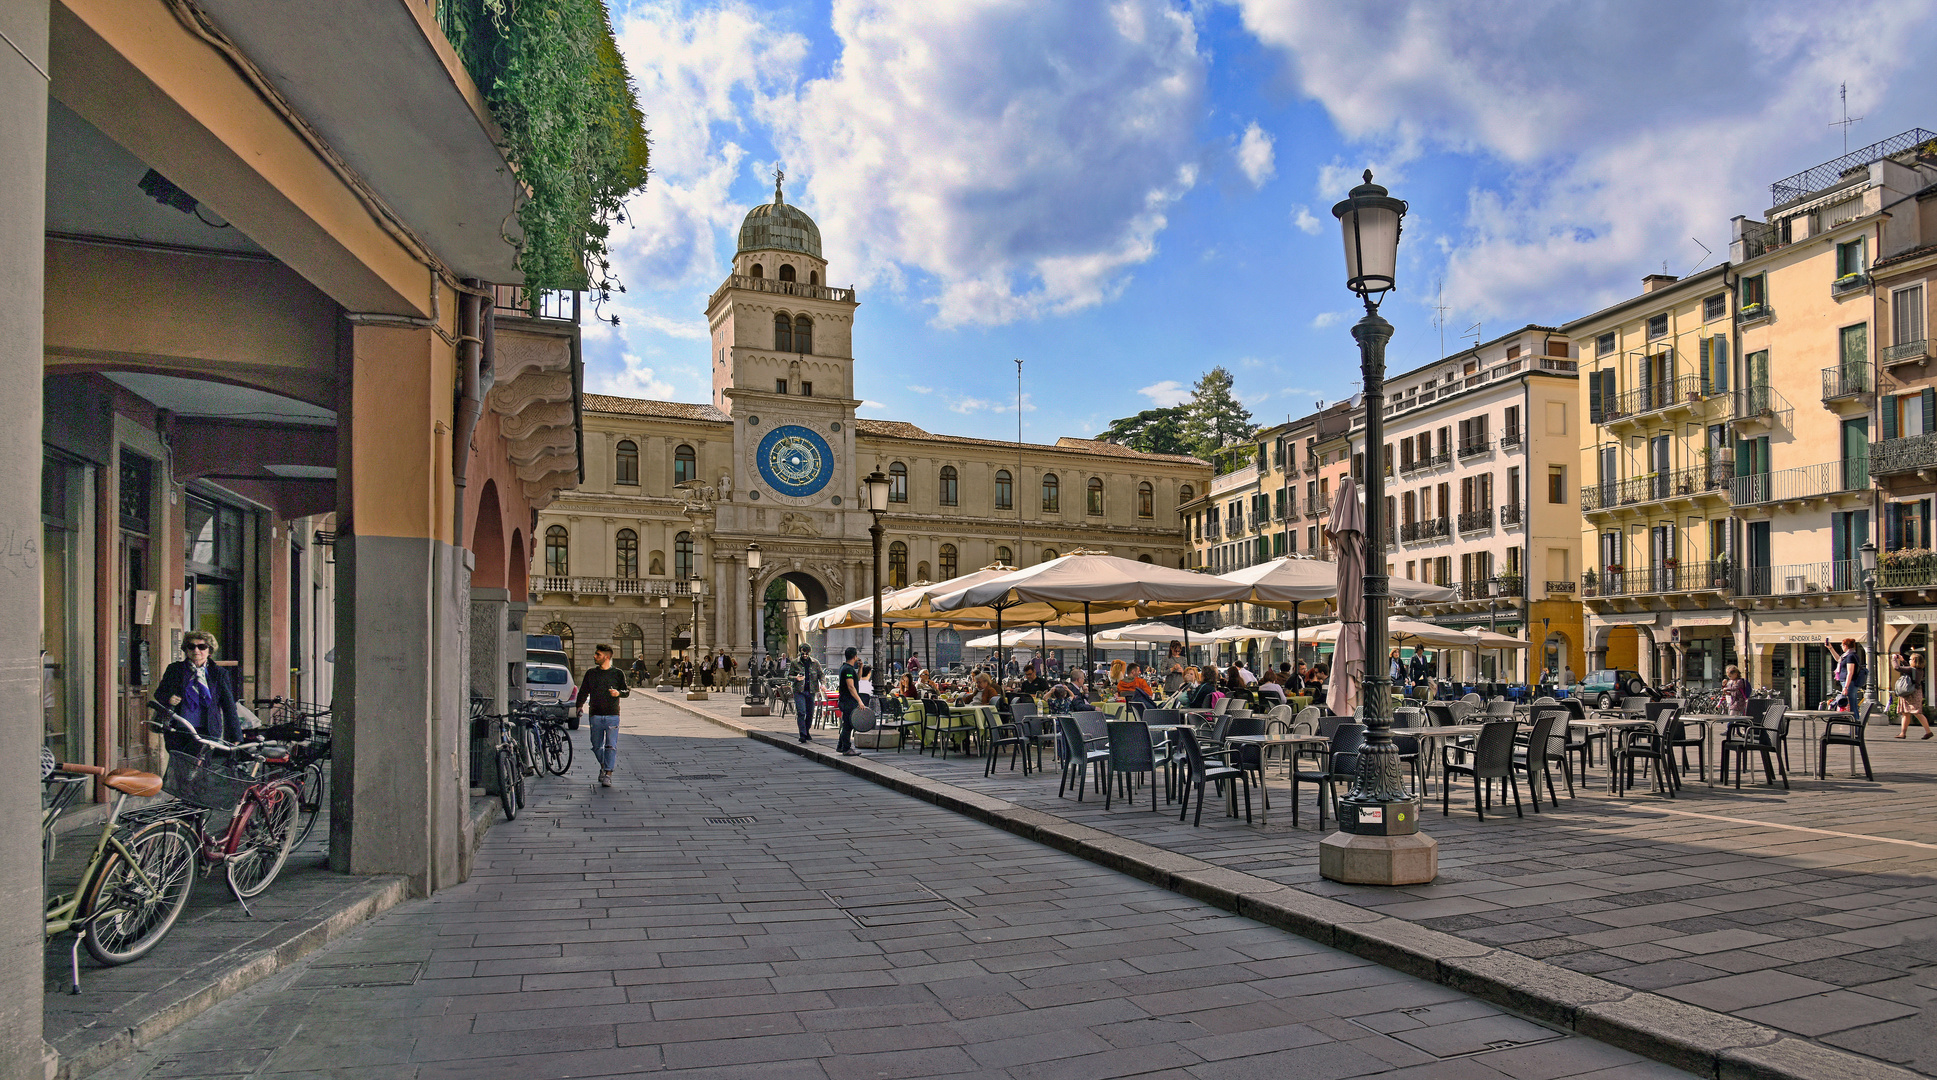 Piazza dei Signori, Padua